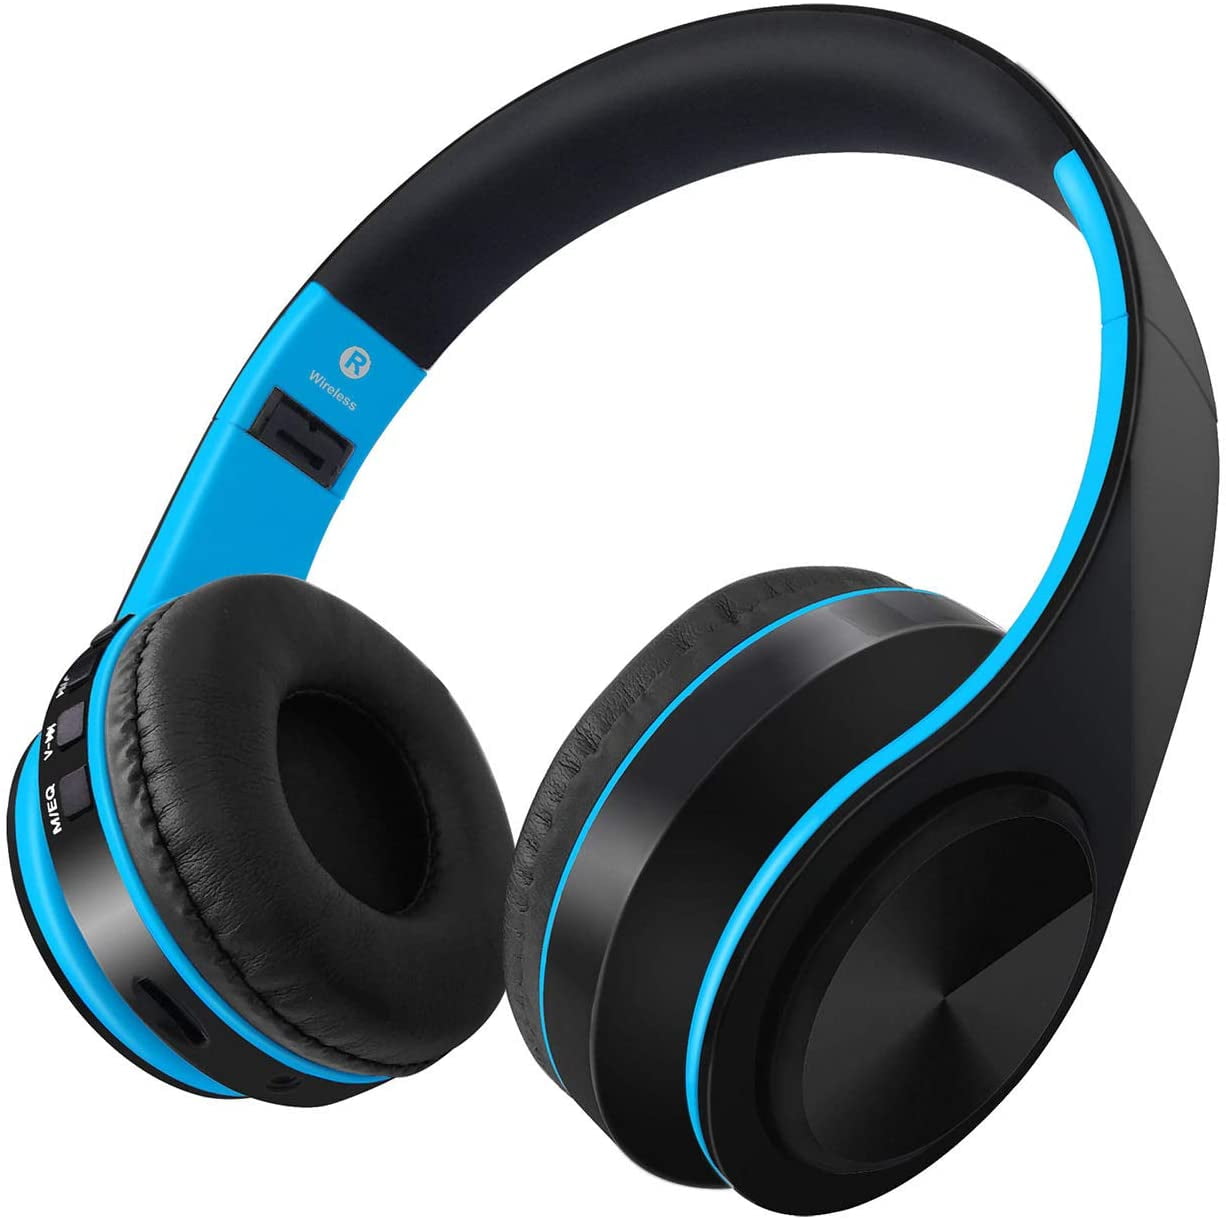 Tragbar ANC Bluetooth Kopfhörer 30 Hours Playtime mit dualen 40 mm Treibern Integriertes Mikrofon fürAndroid iOS PC Bluetooth Geräte 